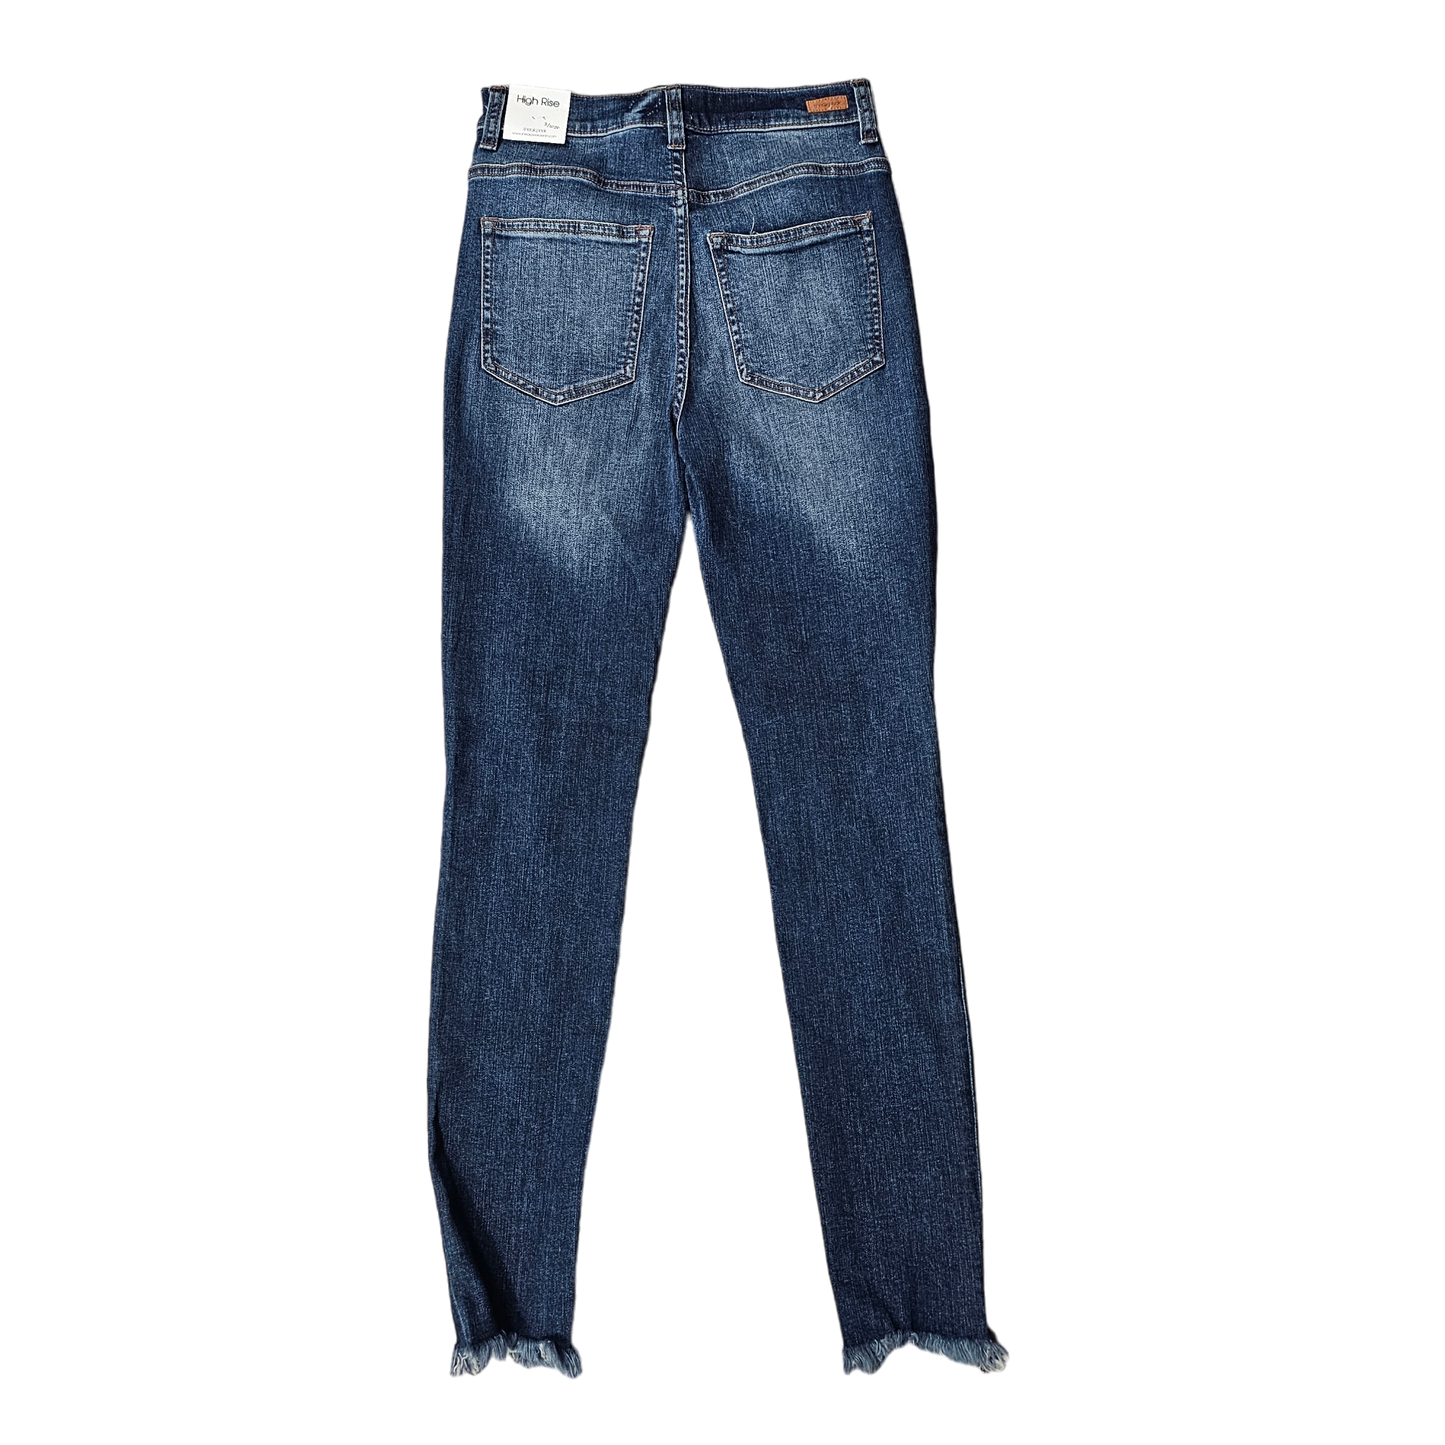 Jeans Skinny By Sneak Peek  Size: 26